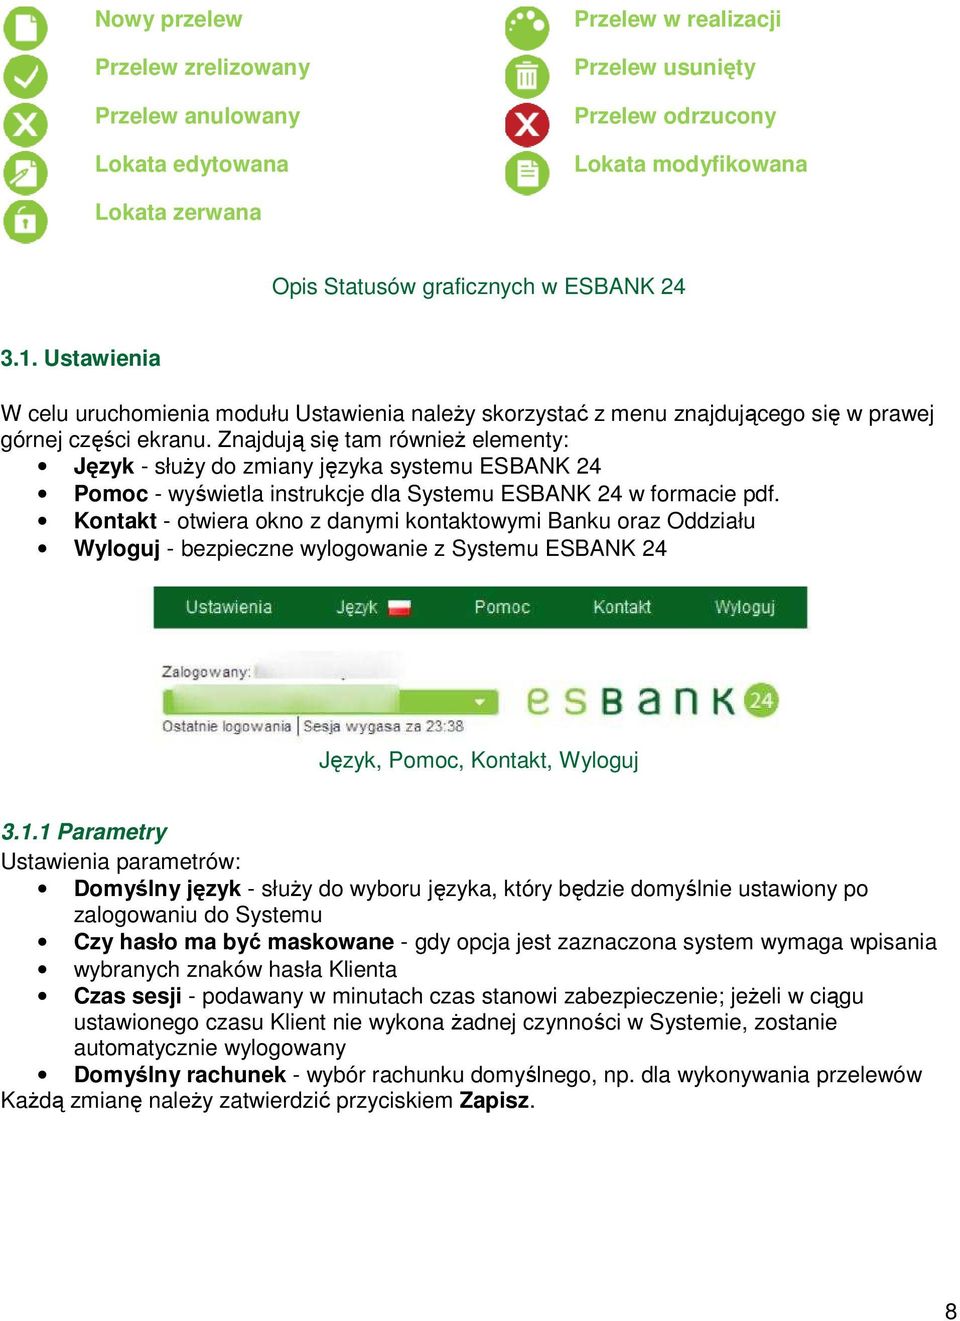 Znajdująą się tam równieŝ elementy: Język - słuŝy do zmiany języka systemu ESBANK 24 Pomoc - wyświetla wietla instrukcje dla Systemu ESBANK 24 w formacie pdf.